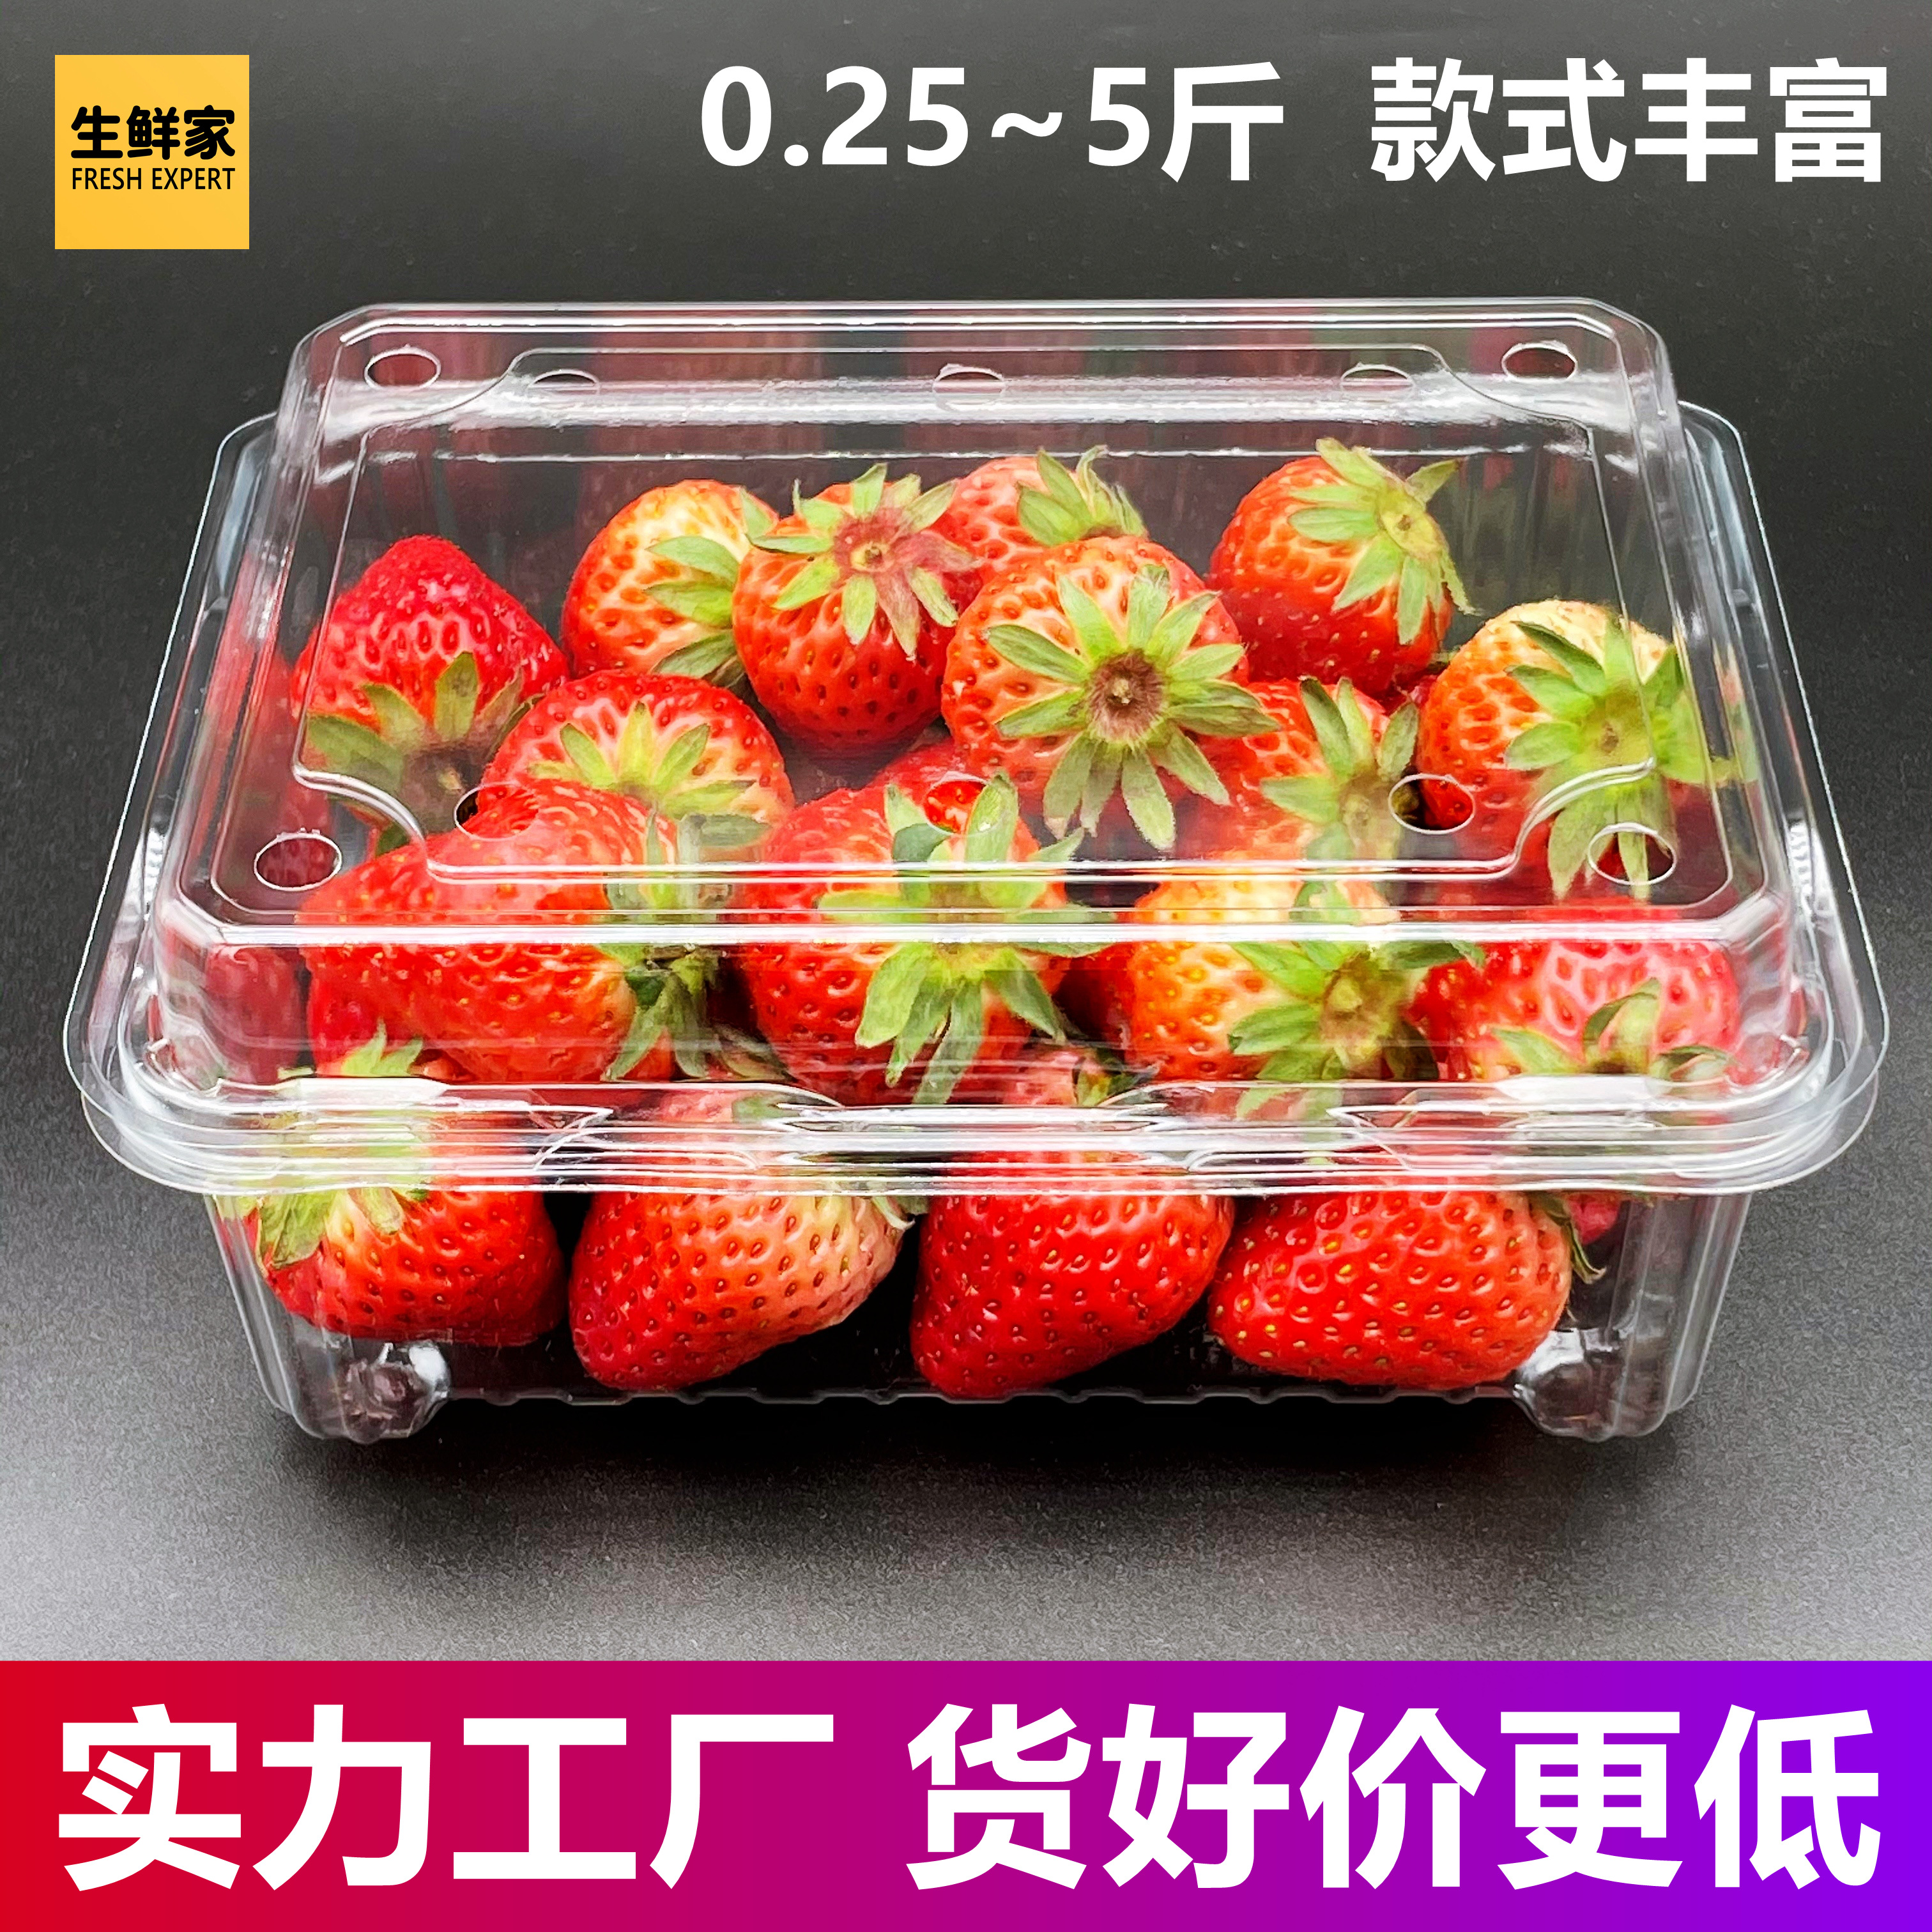 一盒草莓的图片